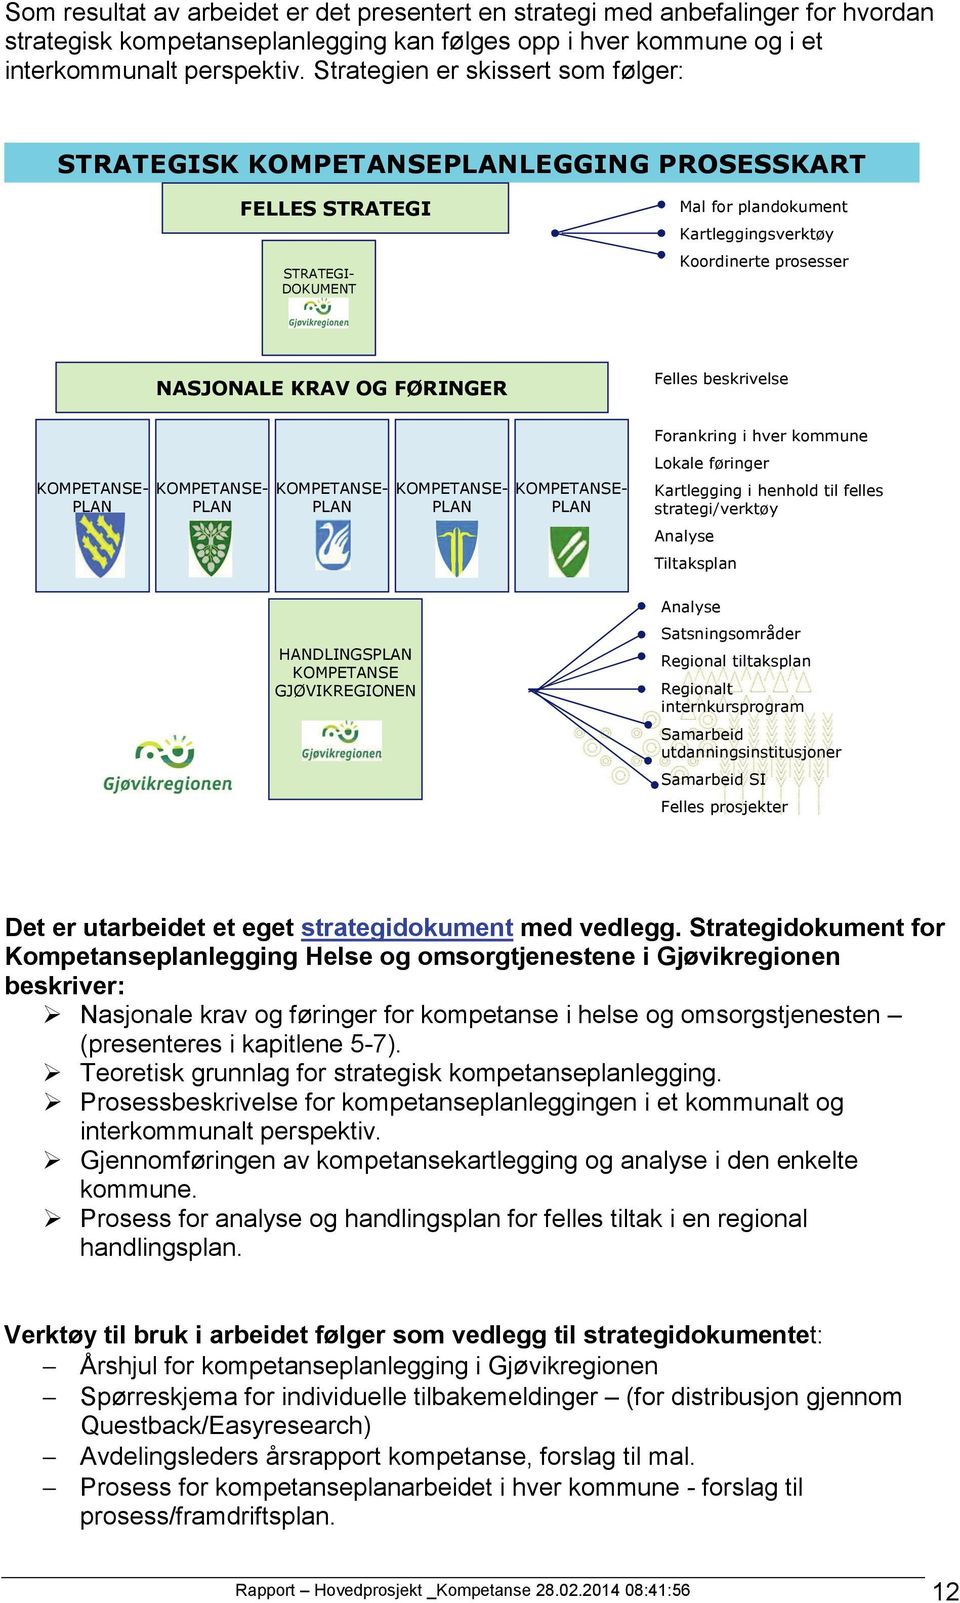 Strategidokument for Kompetanseplanlegging Helse og omsorgtjenestene i Gjøvikregionen beskriver: Nasjonale krav og føringer for kompetanse i helse og omsorgstjenesten (presenteres i kapitlene 5-7).